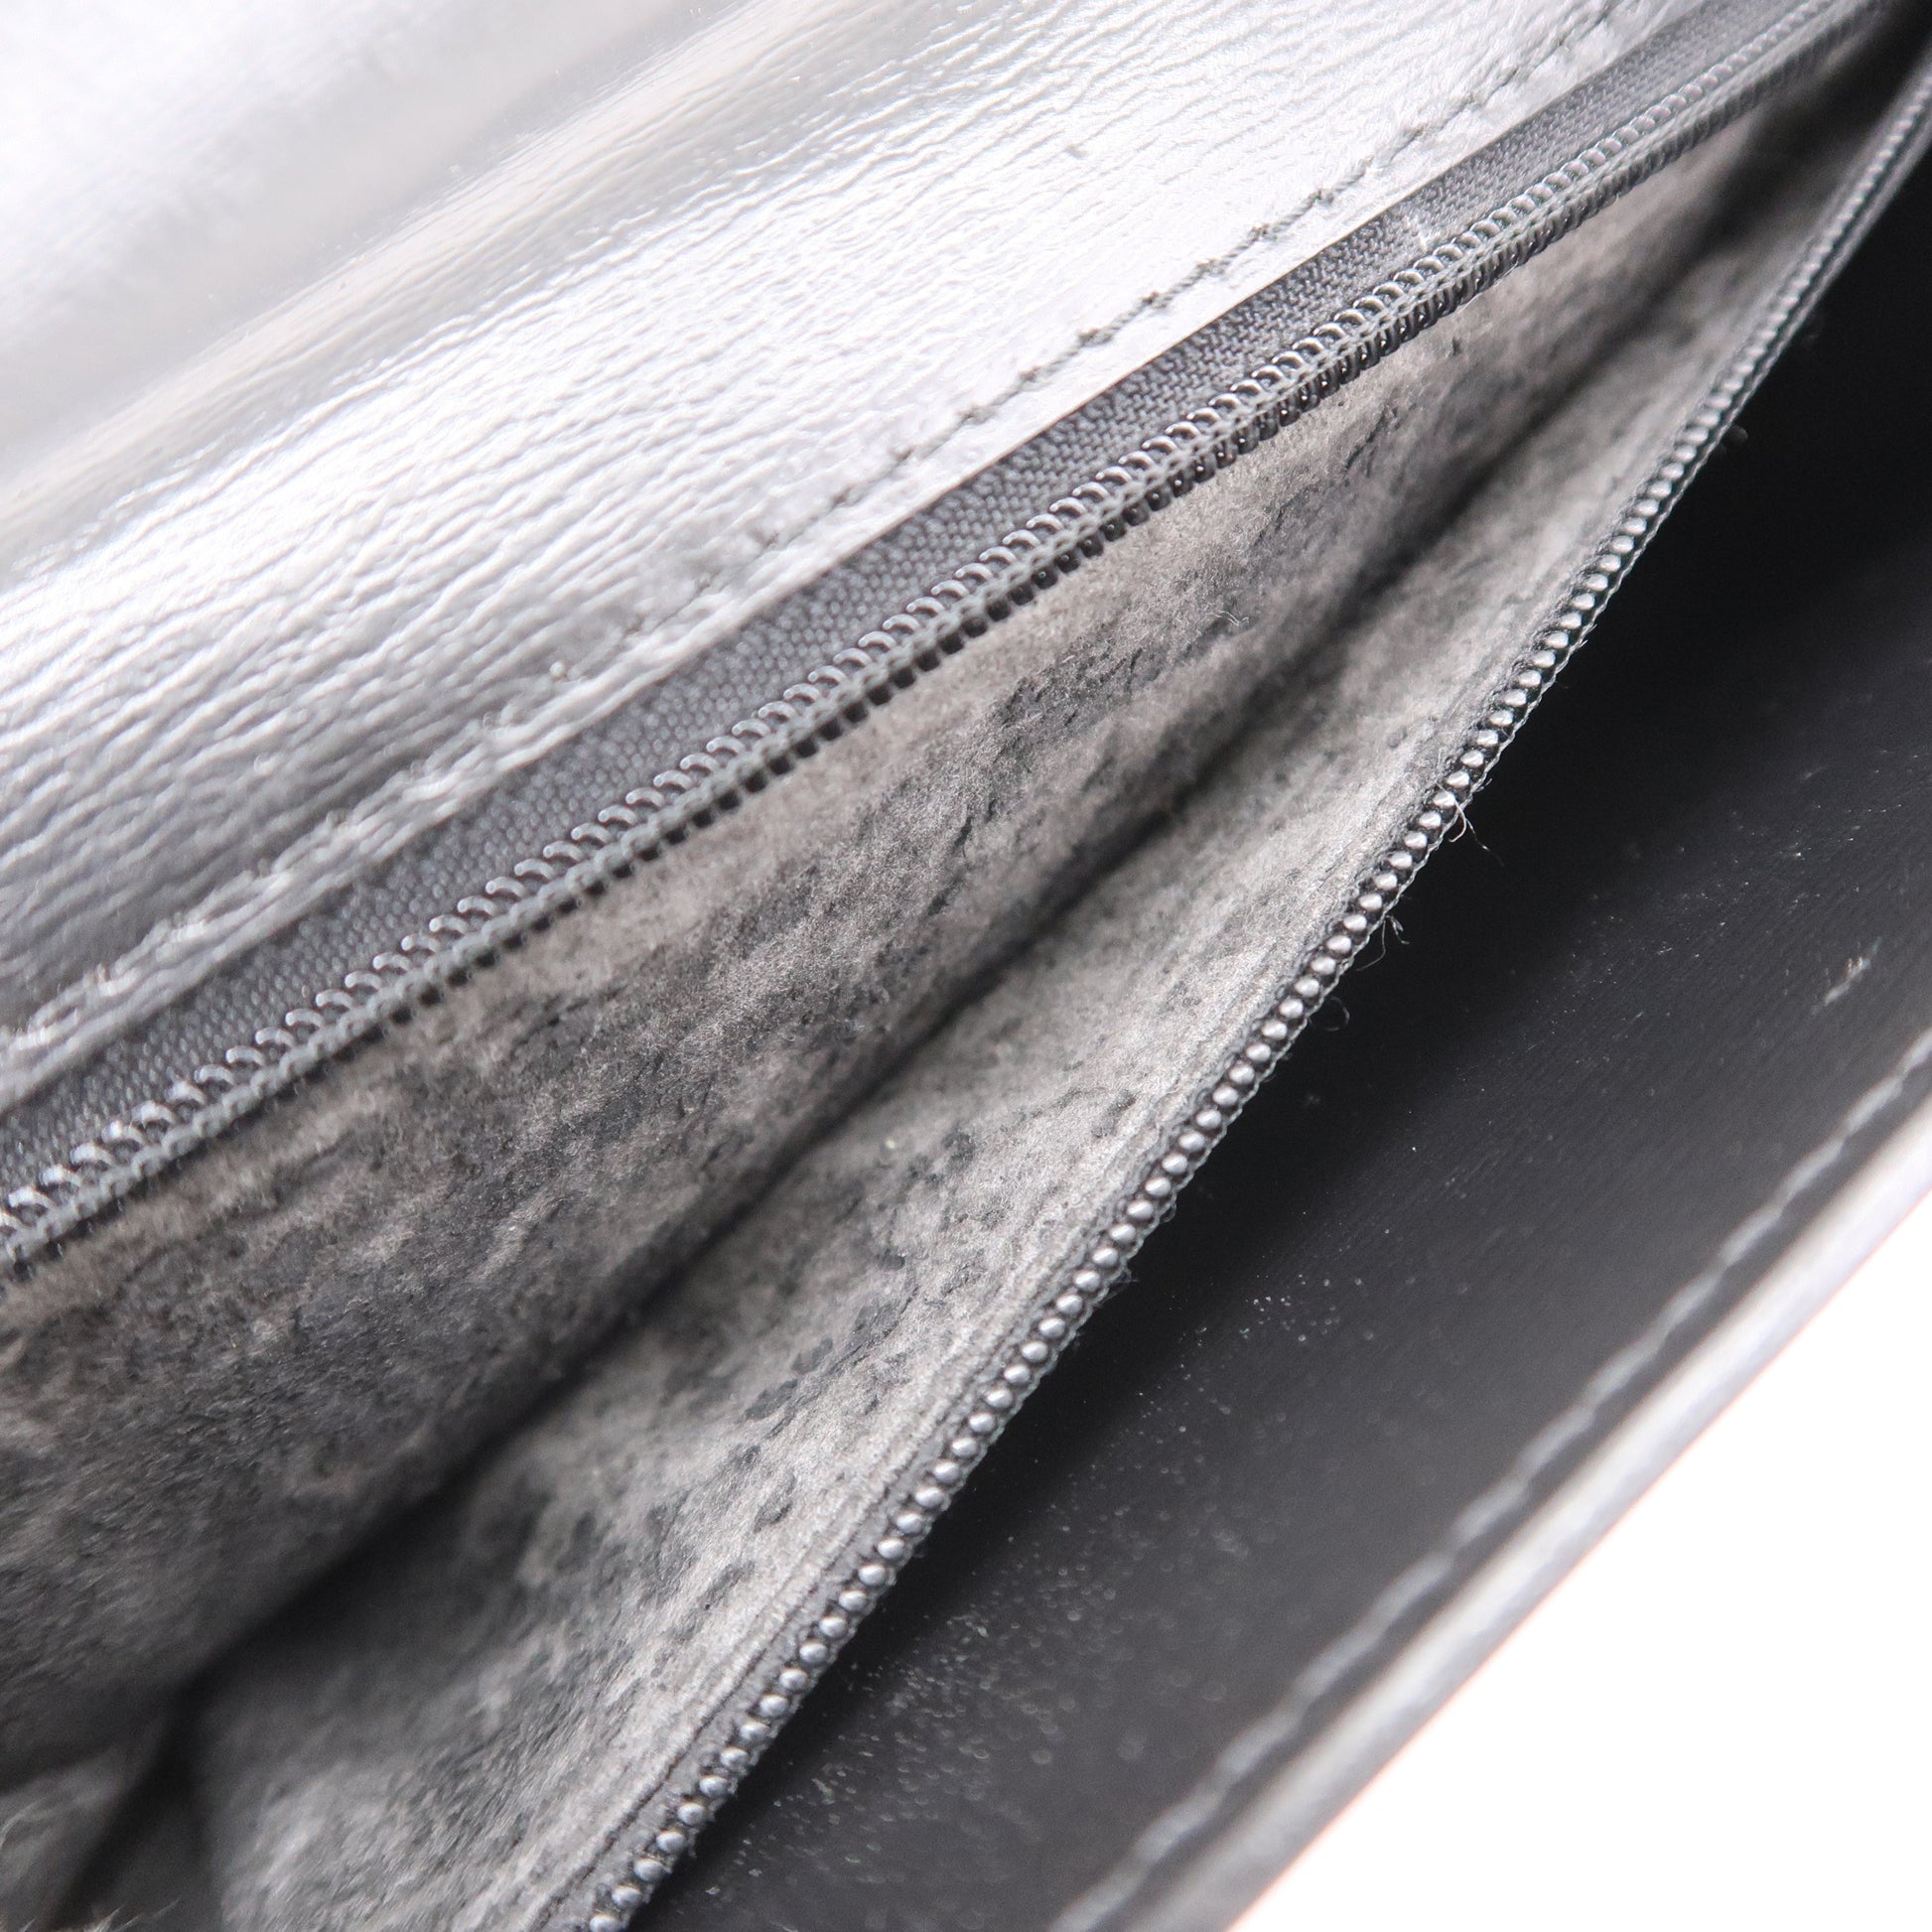 Louis Vuitton The LV Arch Top Handle Bag M55335 Black